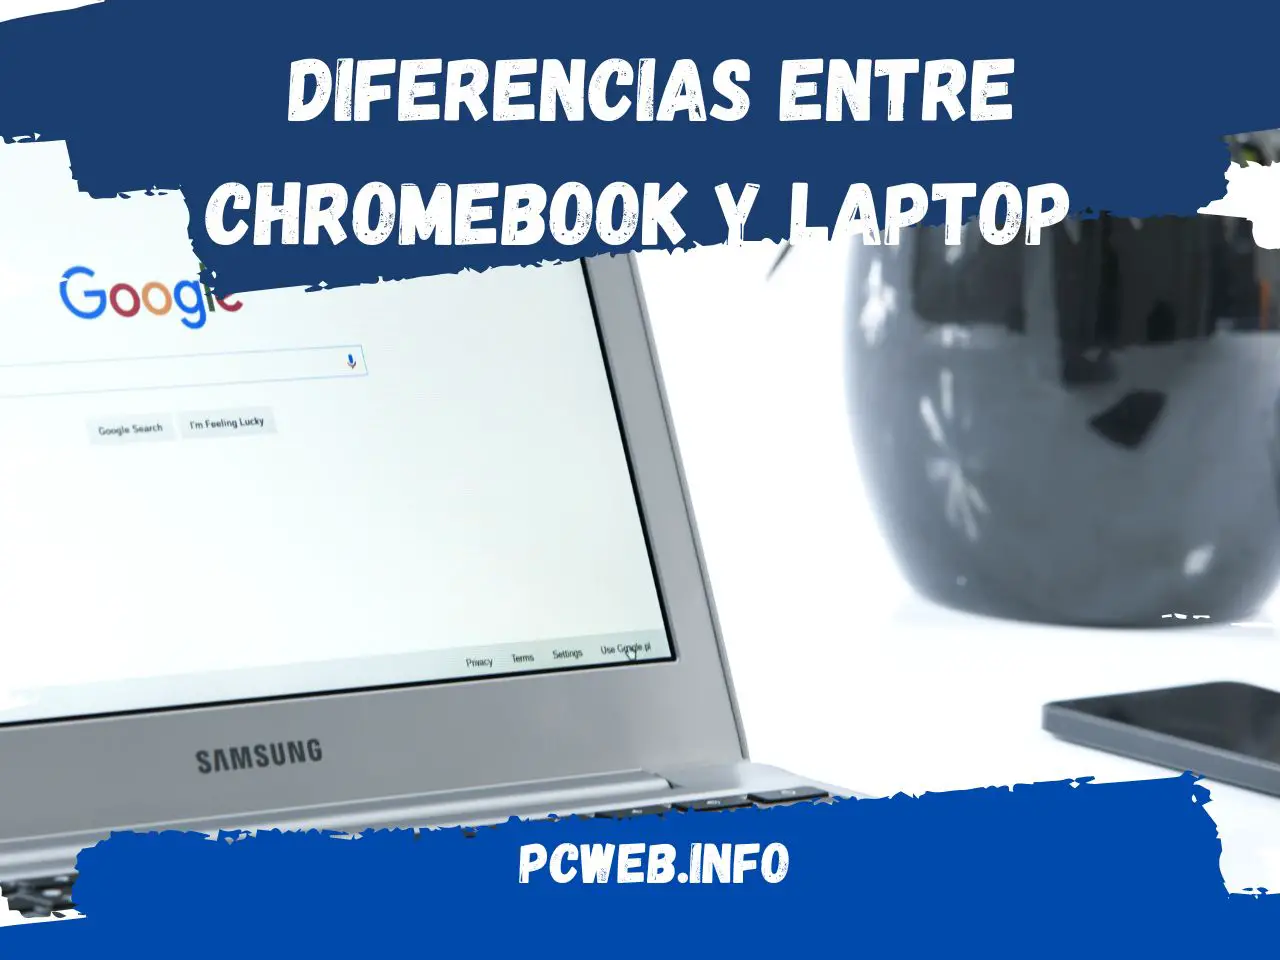 Verschillen tussen Chromebook en laptop